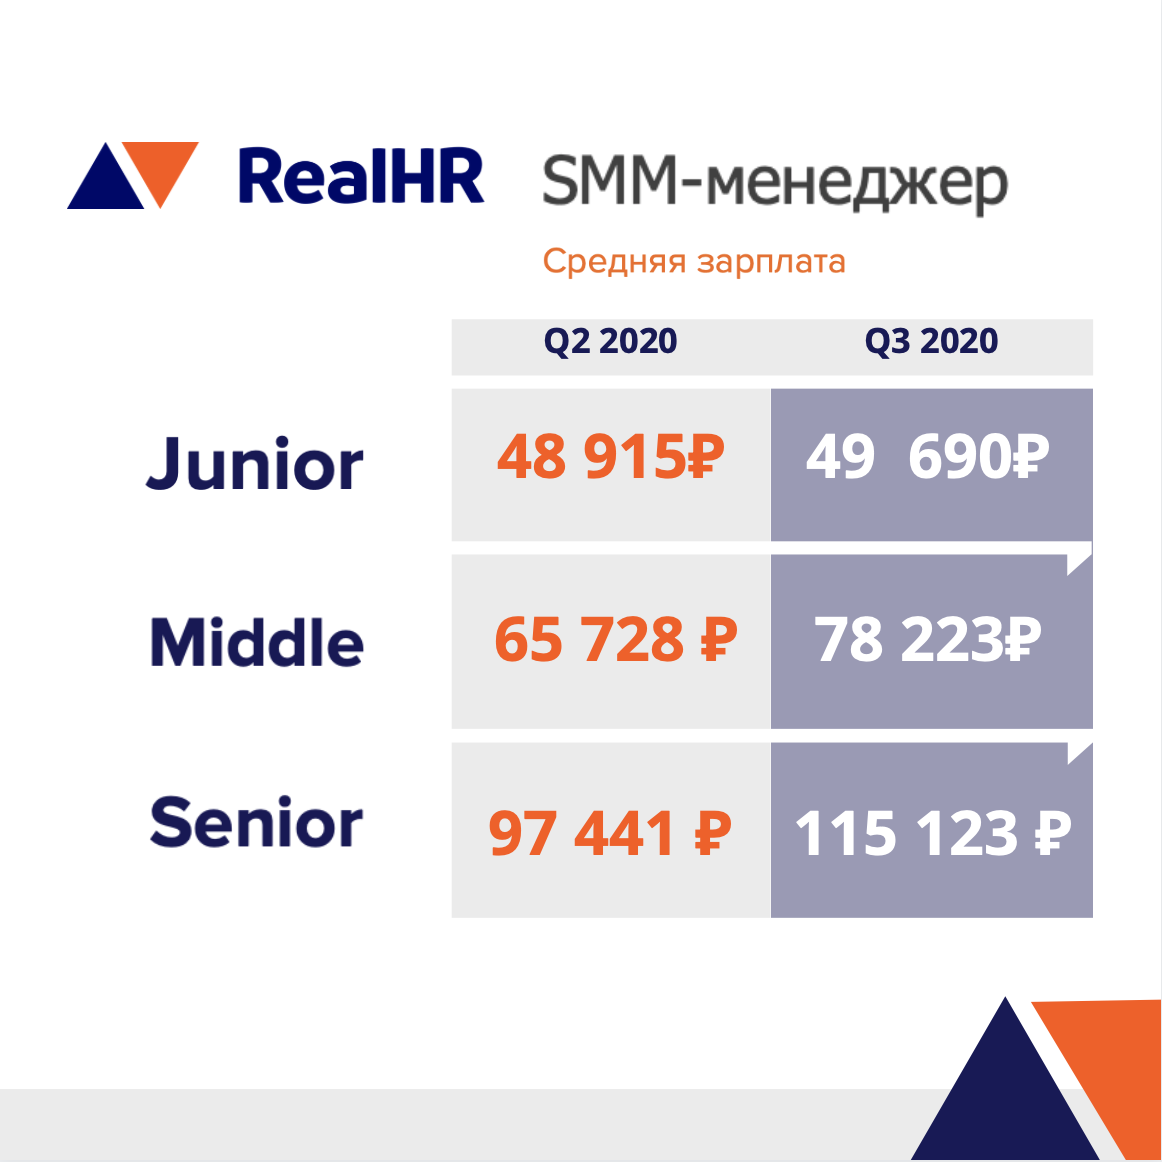 Рейтинг зарплат за Q3 2020 в digital RealHR: SMM-менеджеры